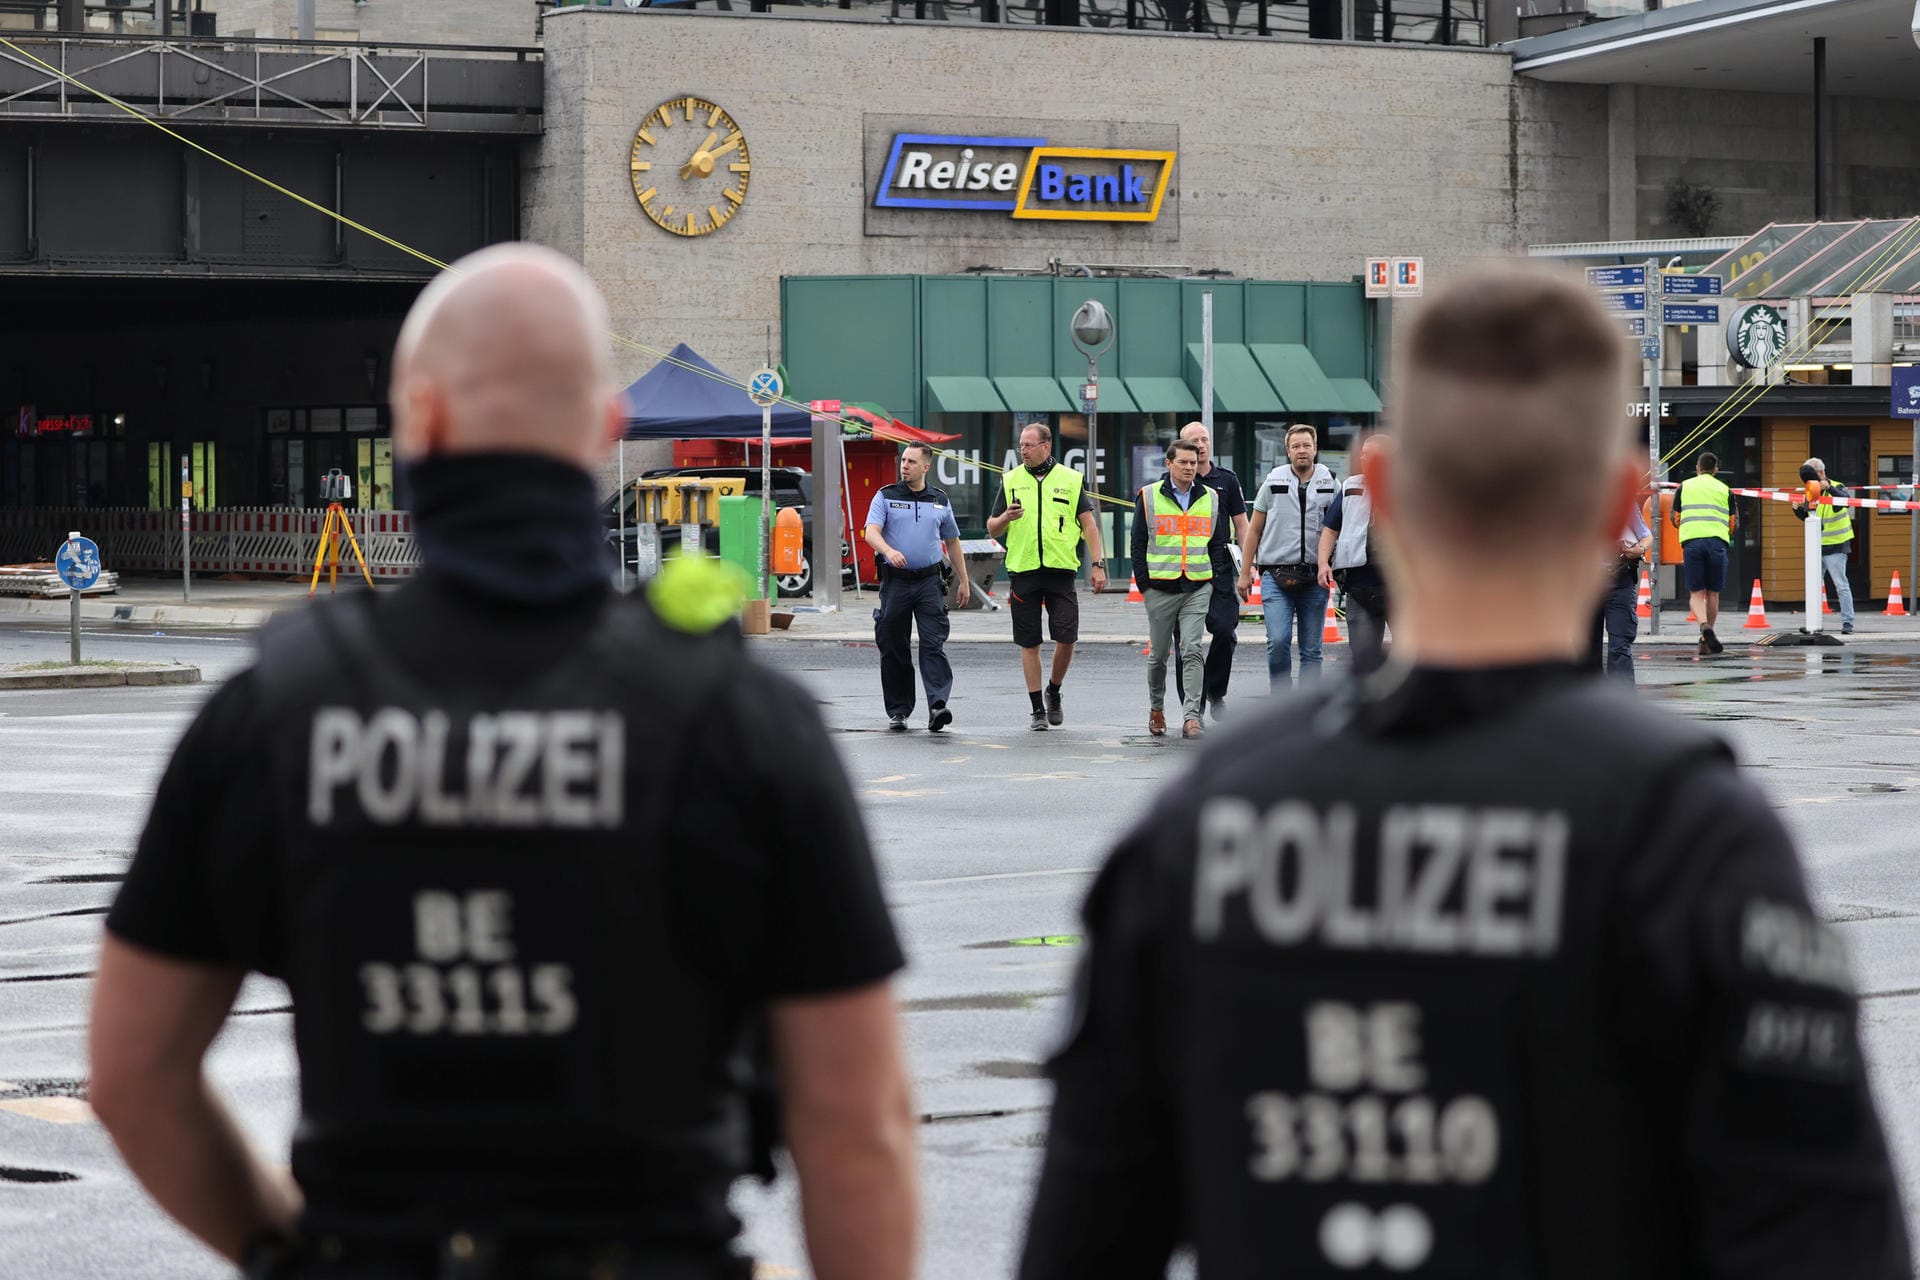 Die Kreuzung am Hardenbergplatz wurde von Polizeikräften abgesichert und bewacht.station in Berlin